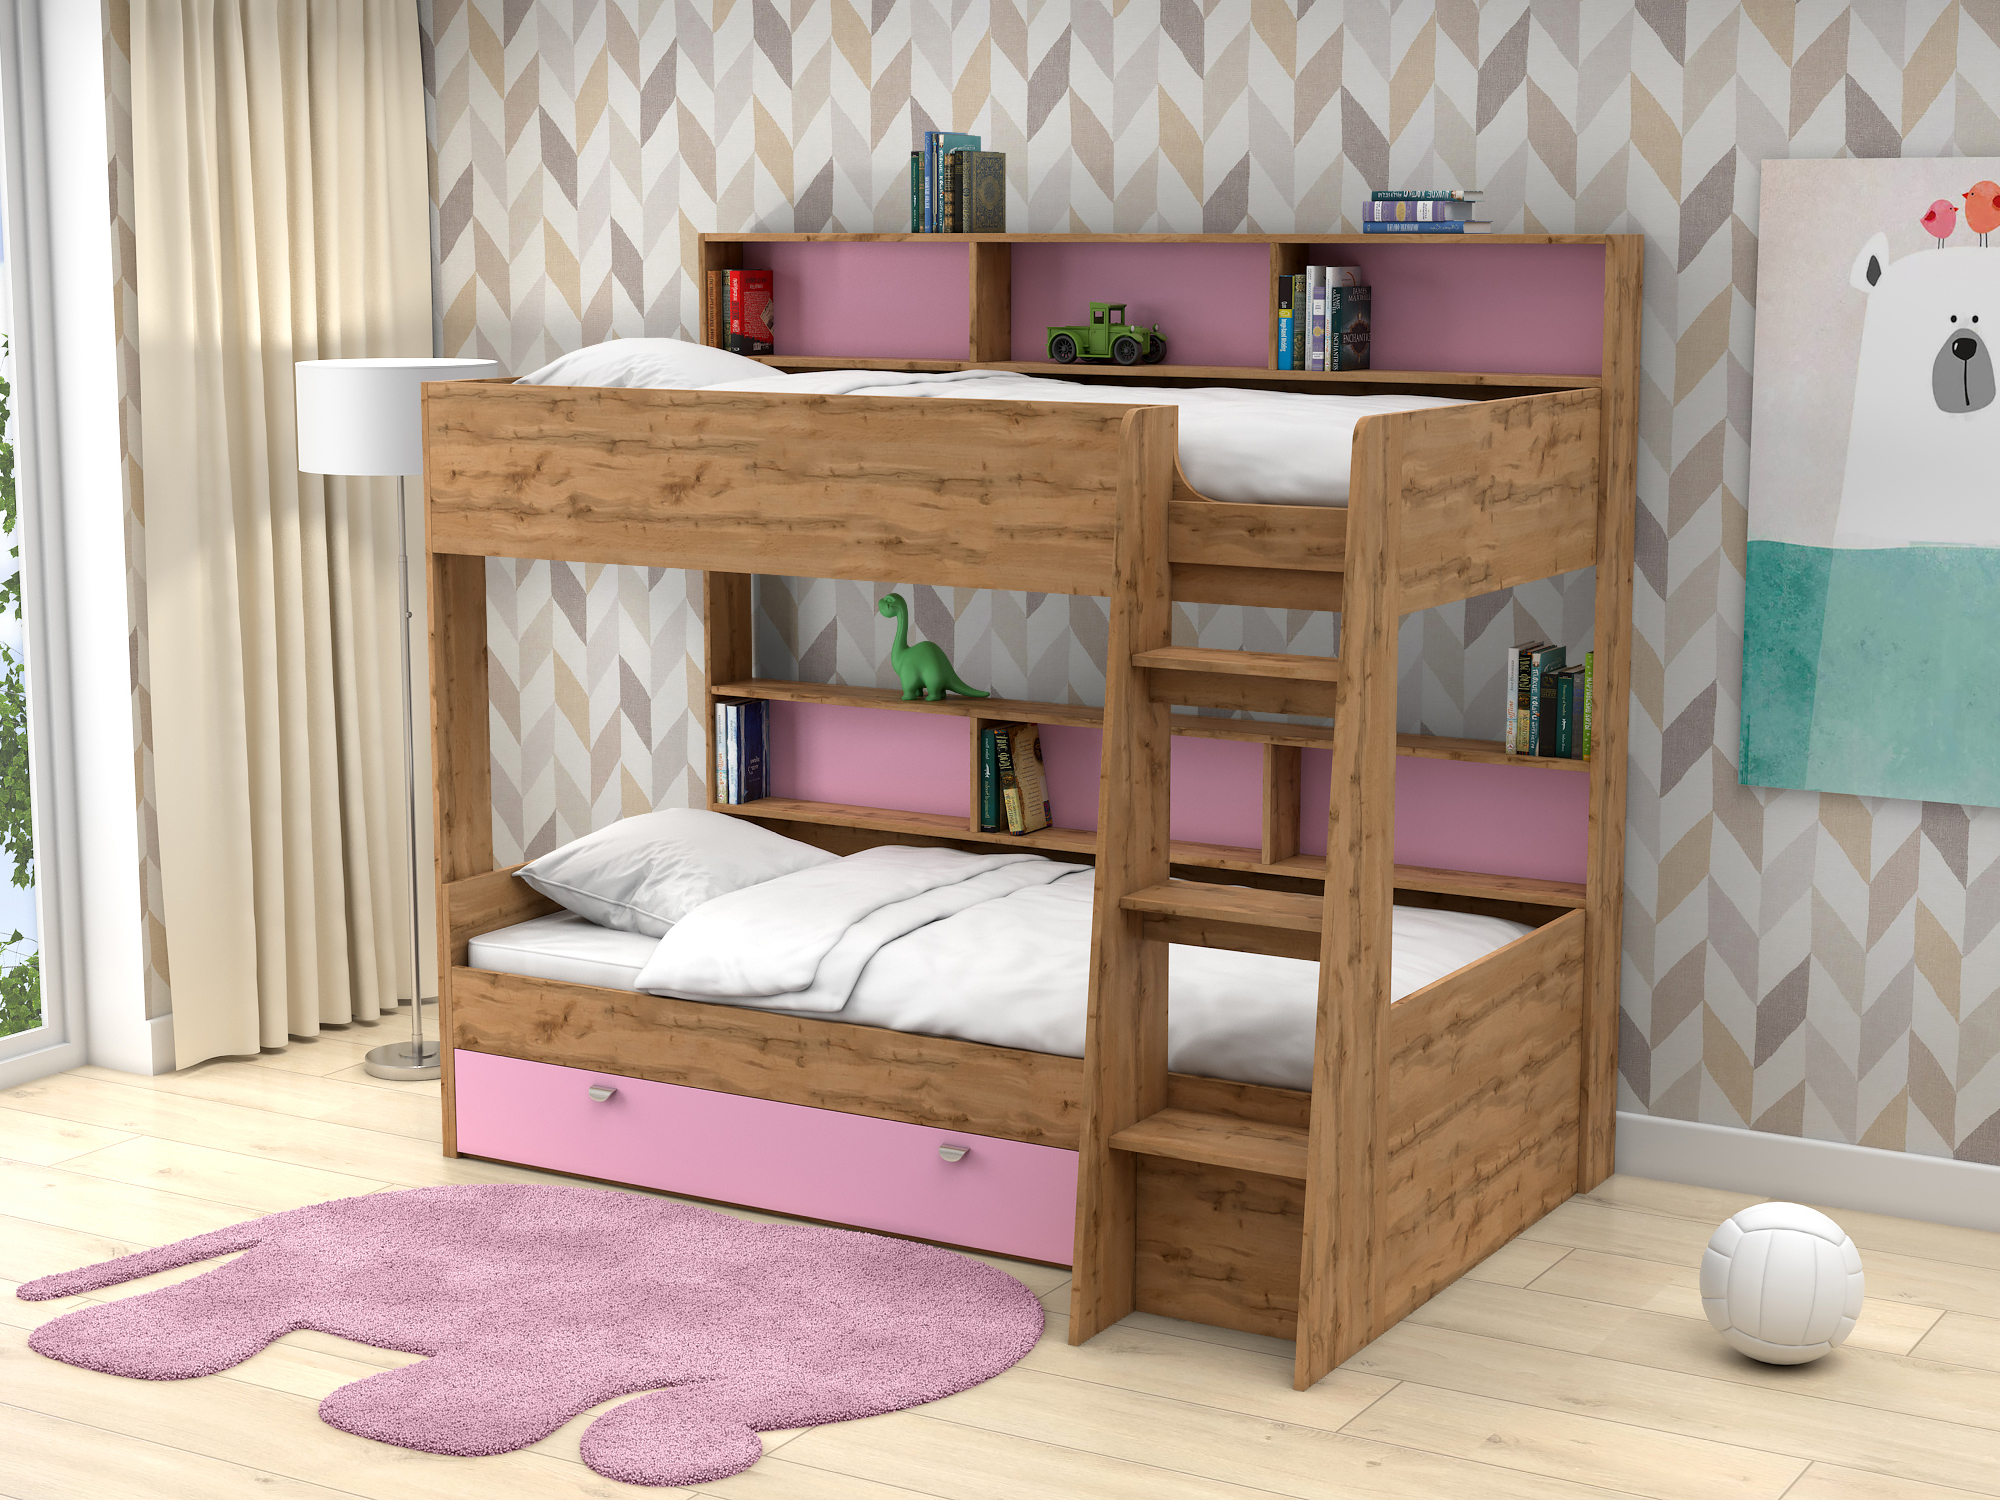 Двухъярусная кровать Golden Kids-1 (90х200) Розовый, Бежевый, ЛДСП двухъярусная кровать golden kids 1 90х200 бежевый лдсп